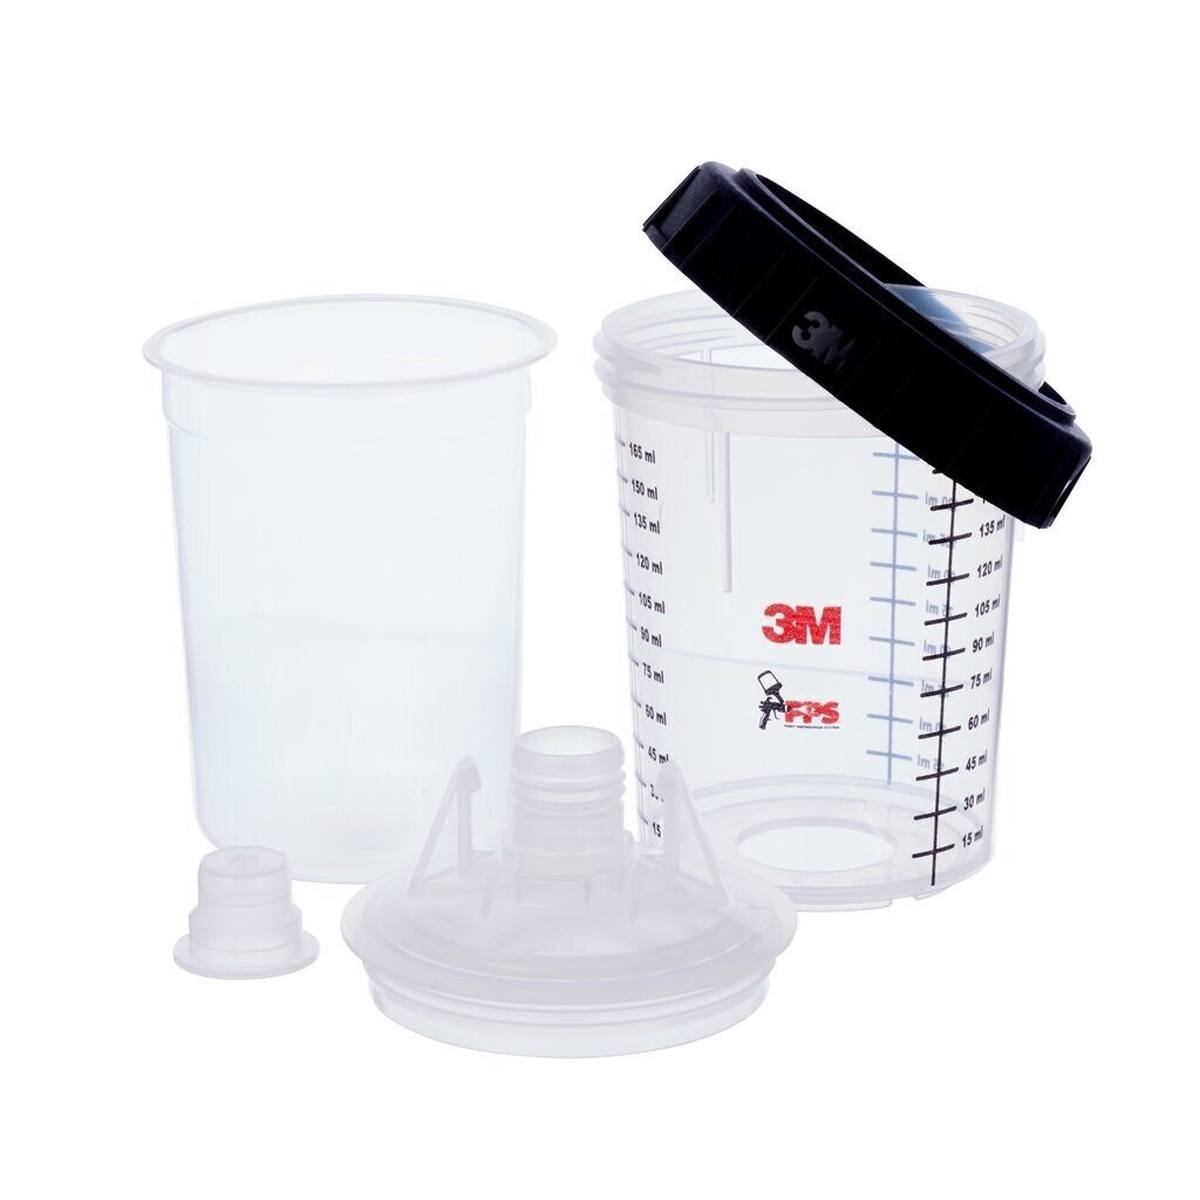 3M PPS mini kit filter 125Î¼, 50 inner cups, 50 lids, 24 caps, 0.17m #E16752